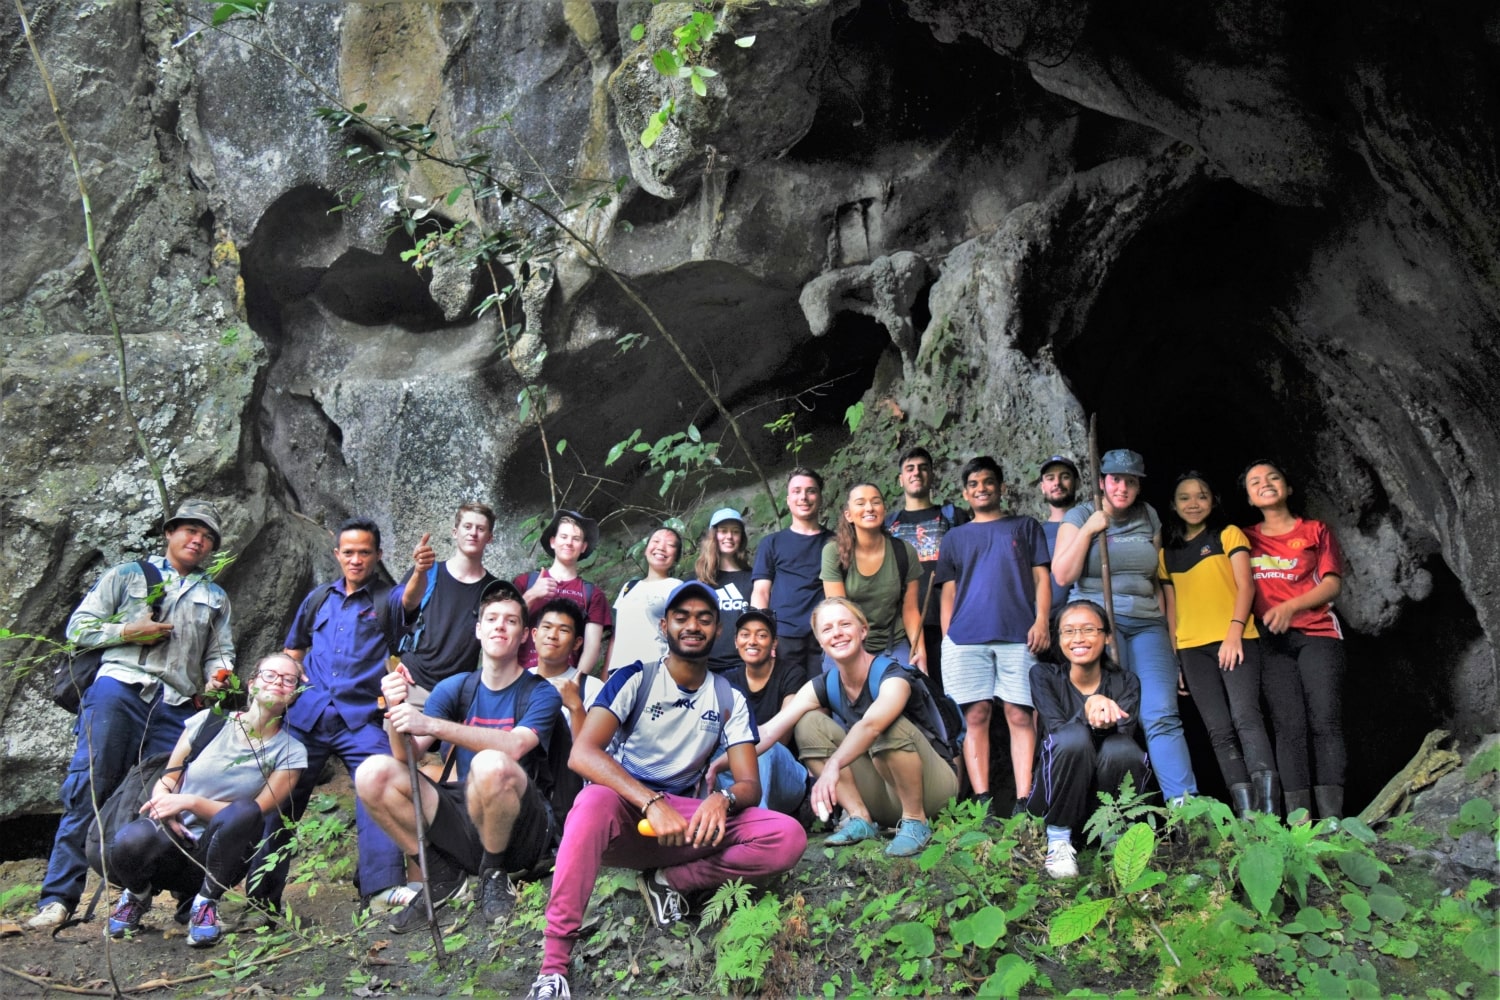 Trekking and exploring Bedoh Cave with Backyard Tour Malaysia